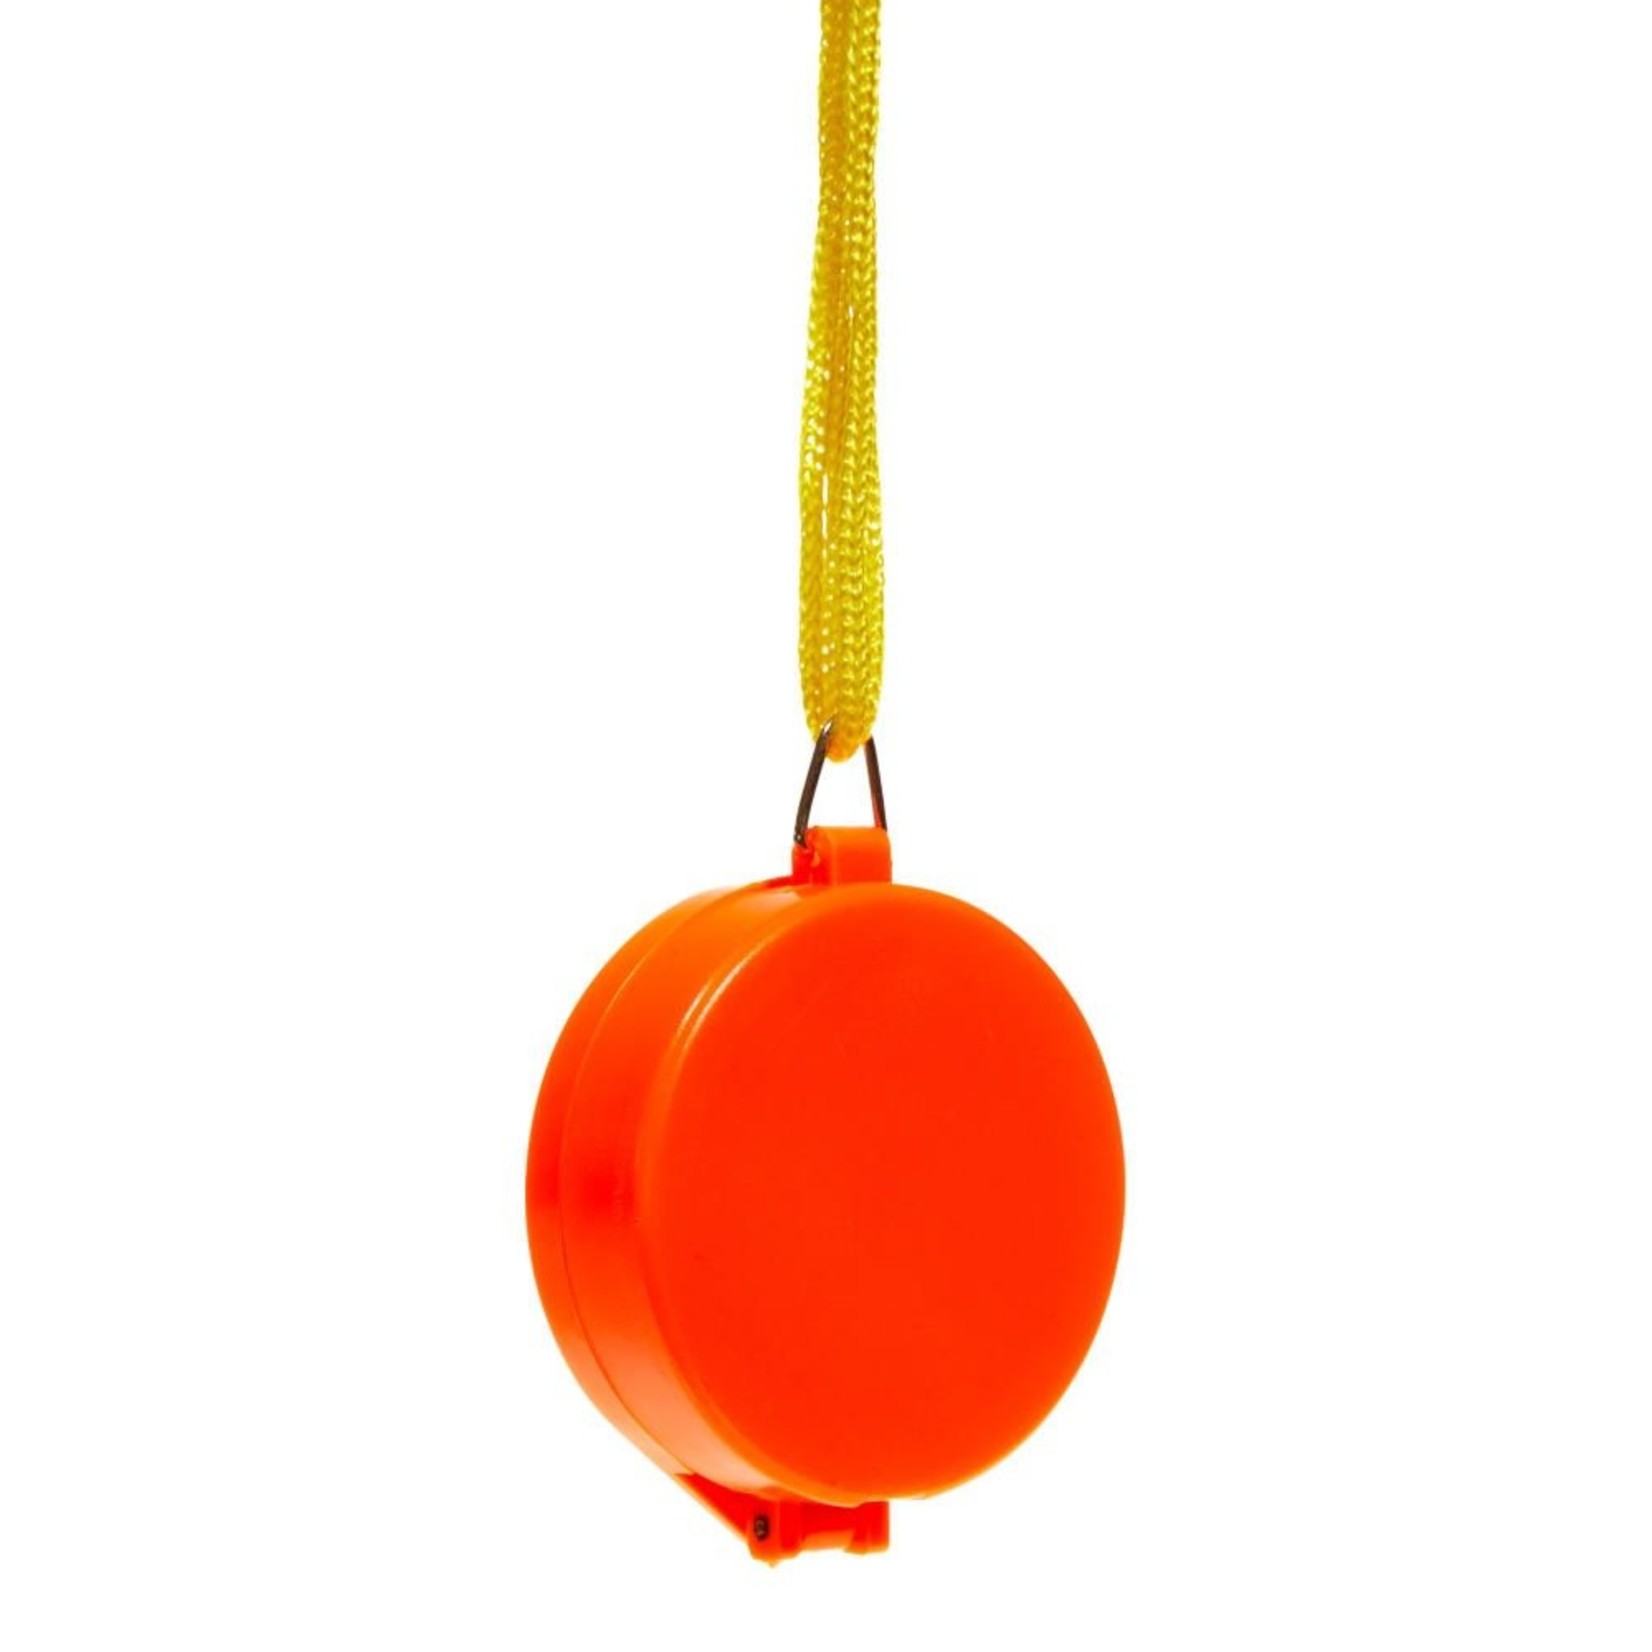 Allen Boussole de poche avec couvercle, orange